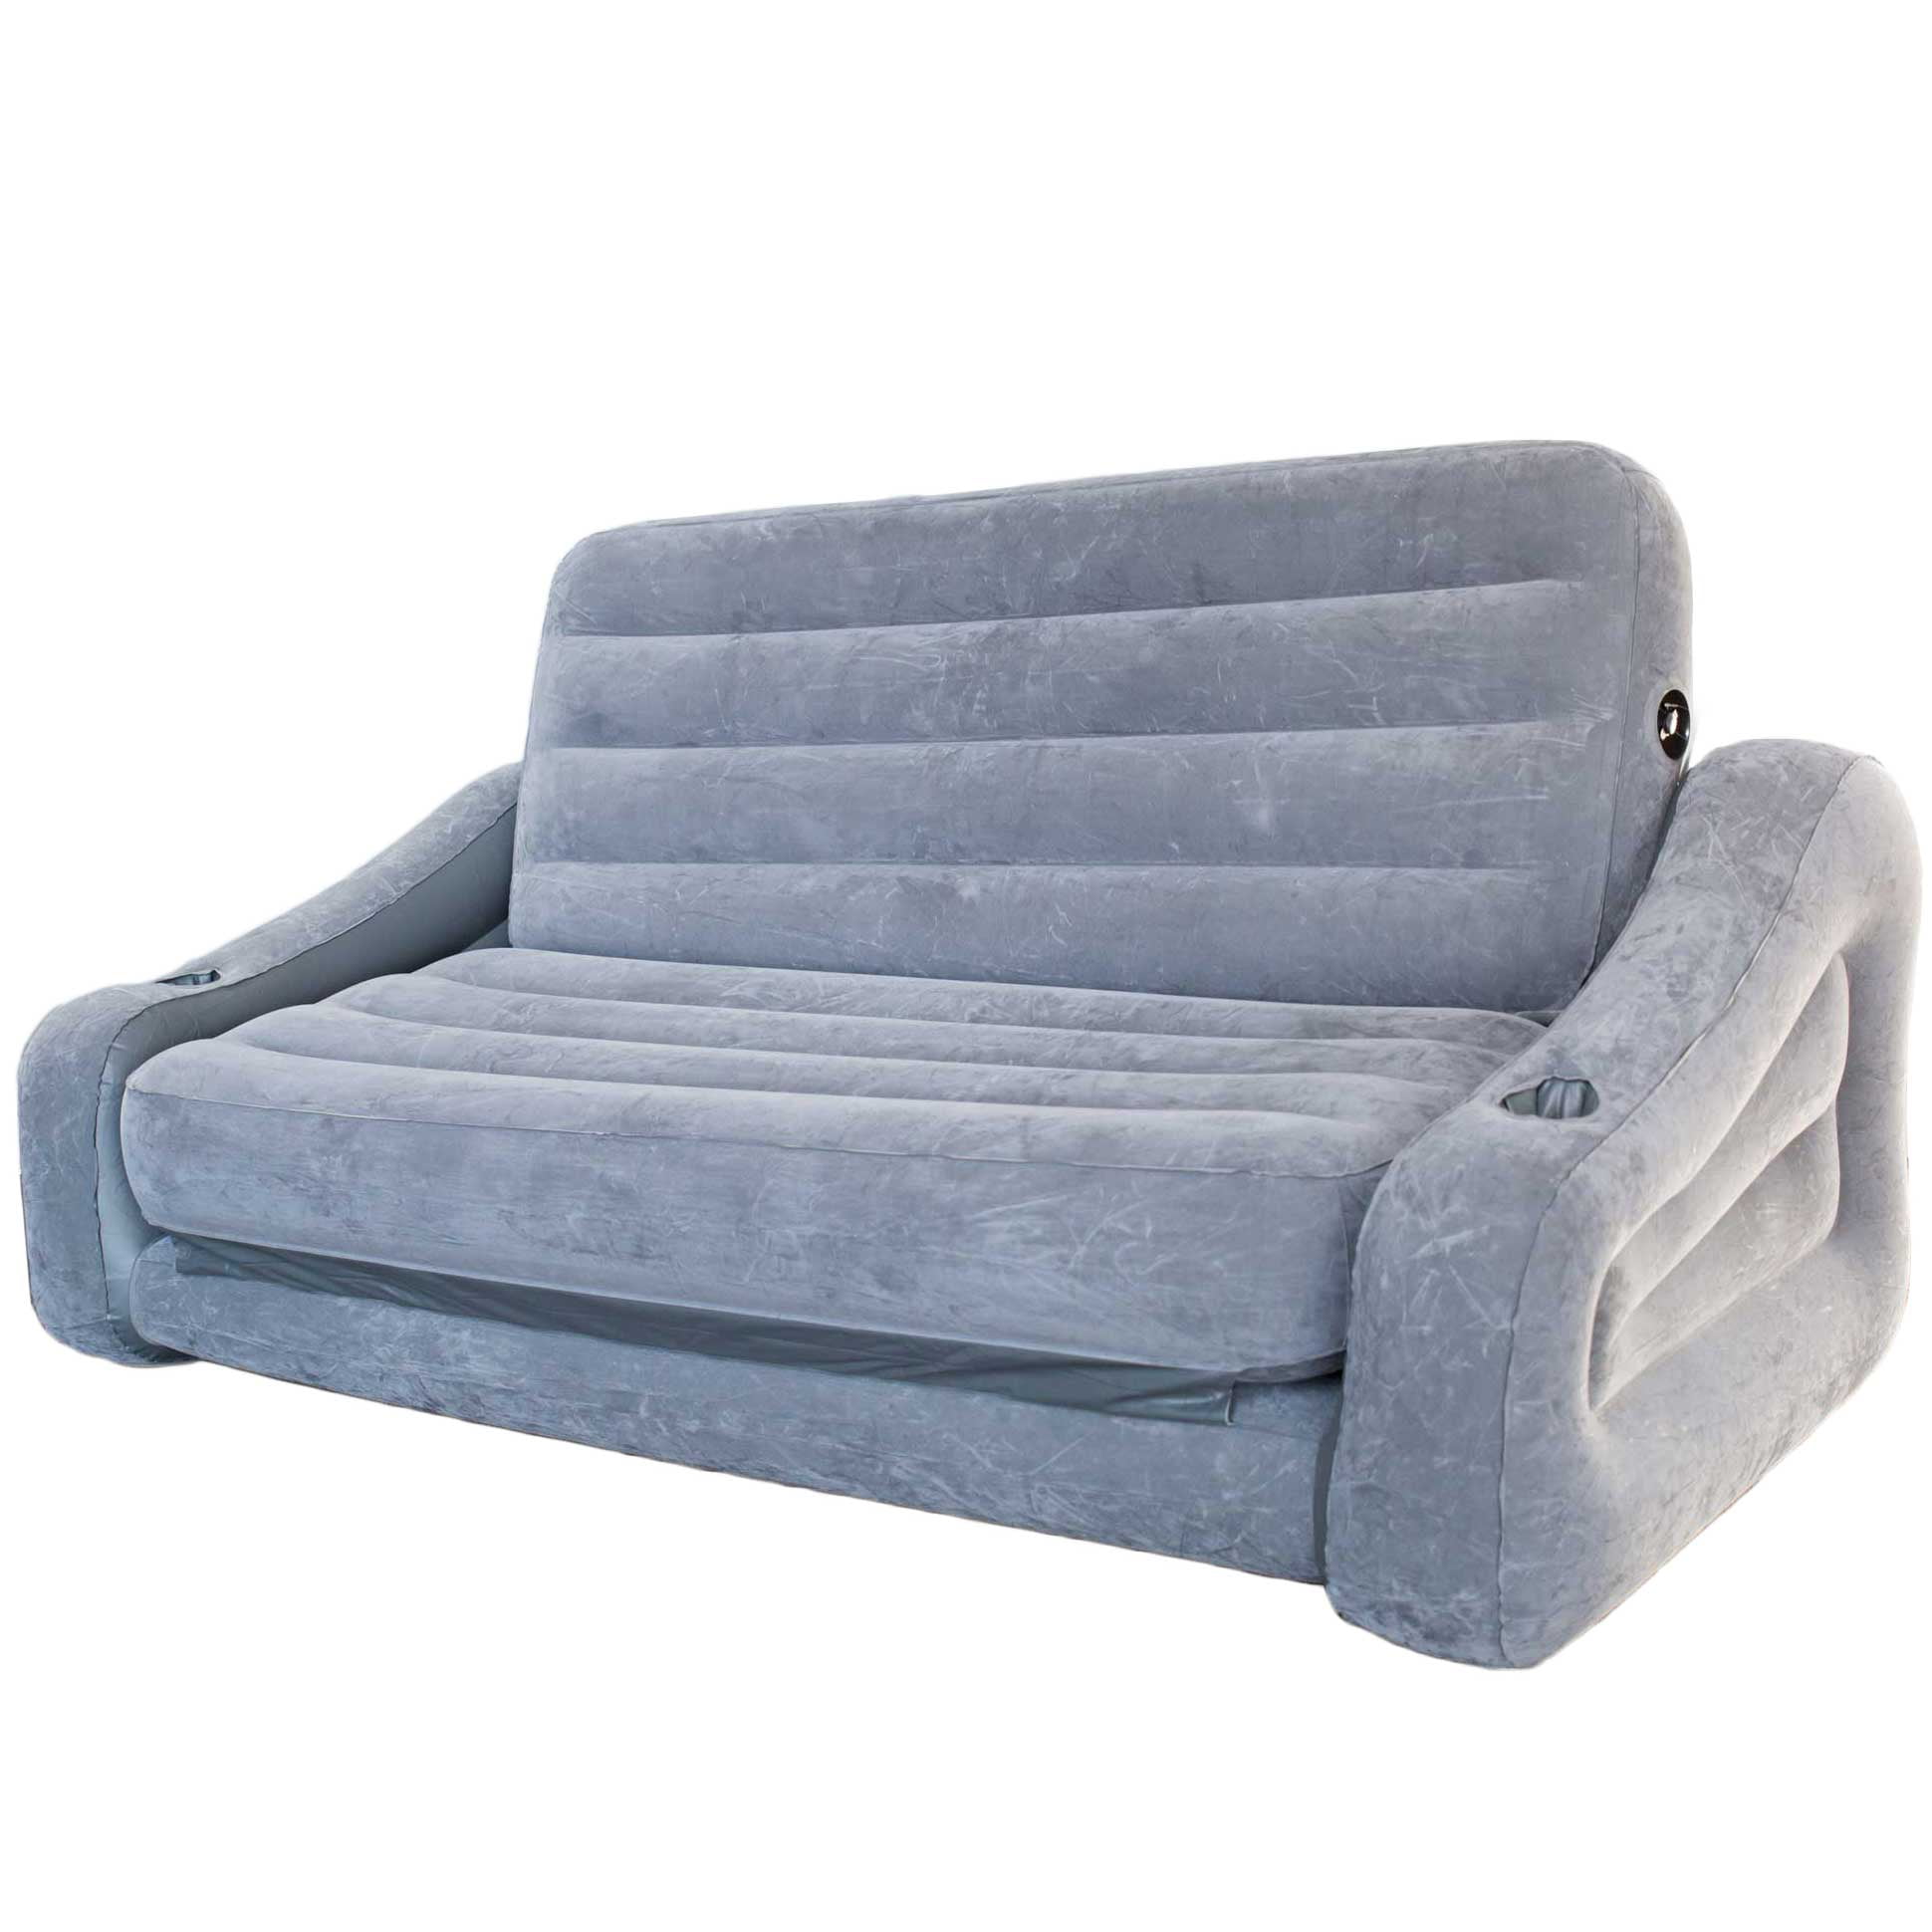 Sofa Couch And Queen Air Mattress Futon, Intex Pull Out Sofa Tesco